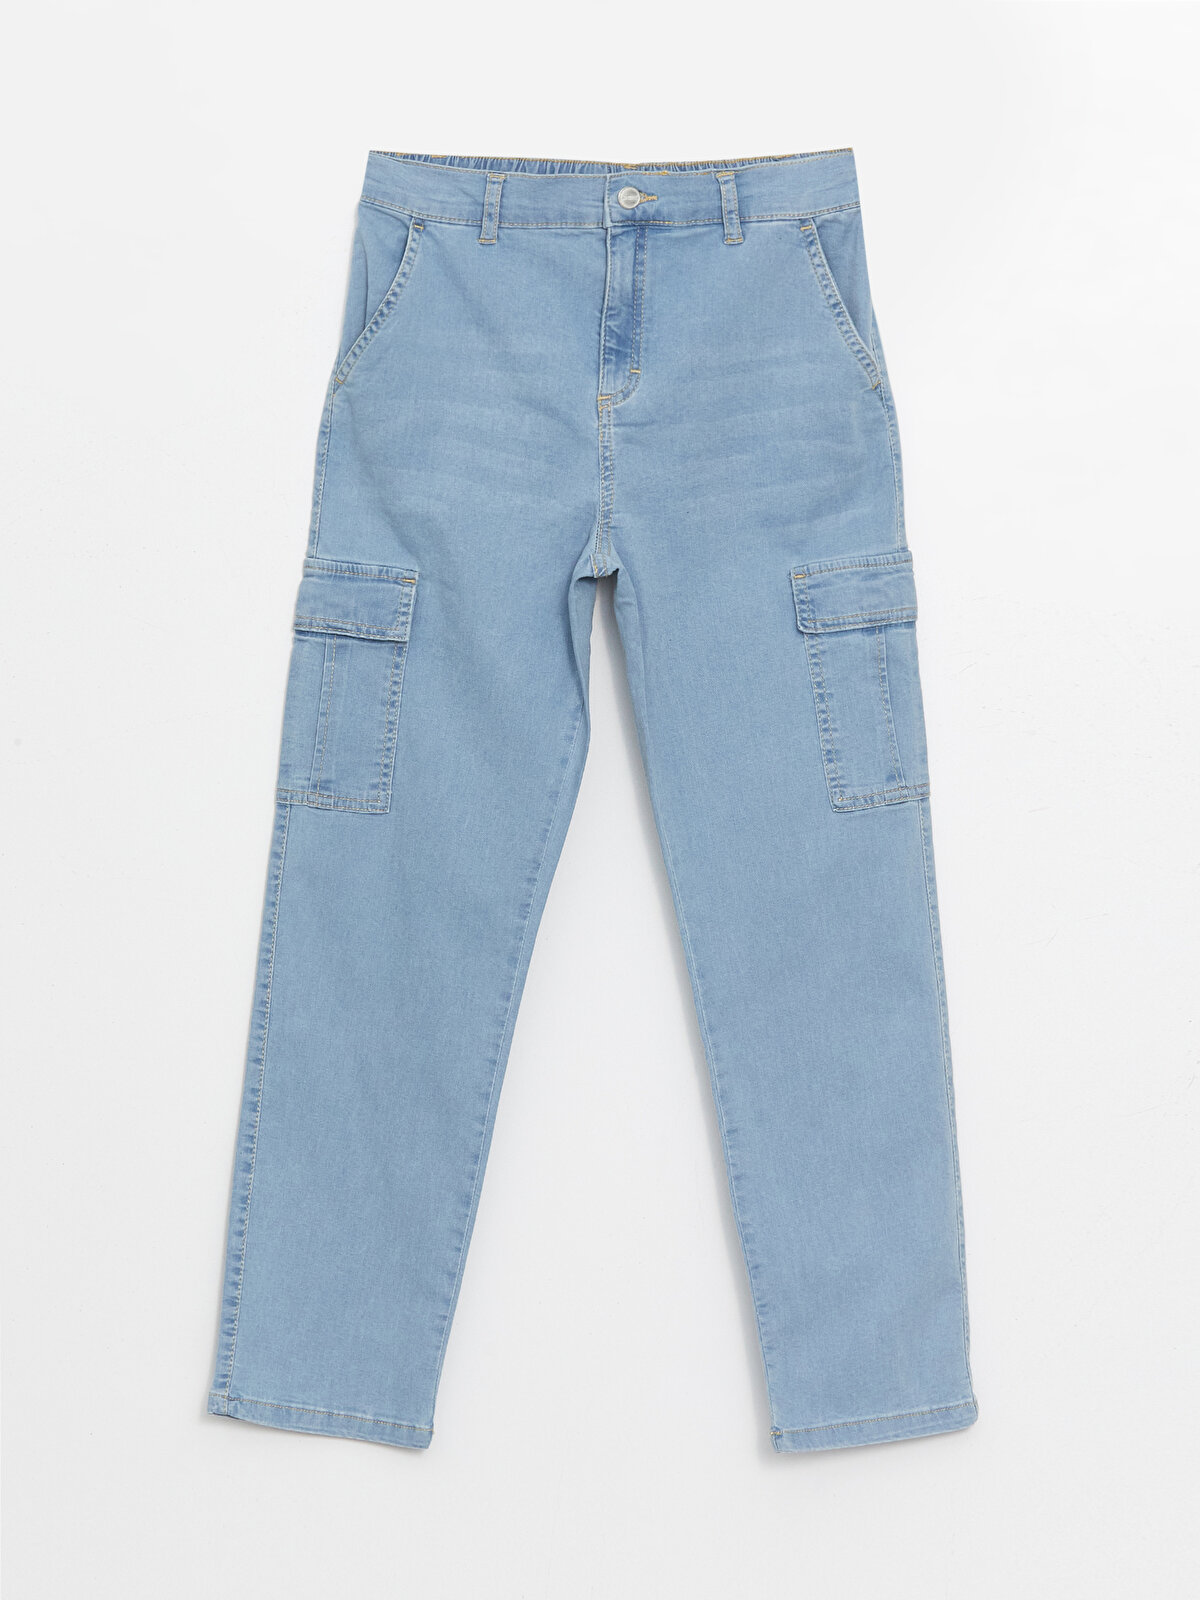 Boys Cargo Jeans With Elastic Waist -S46011Z4-311 - S46011Z4 